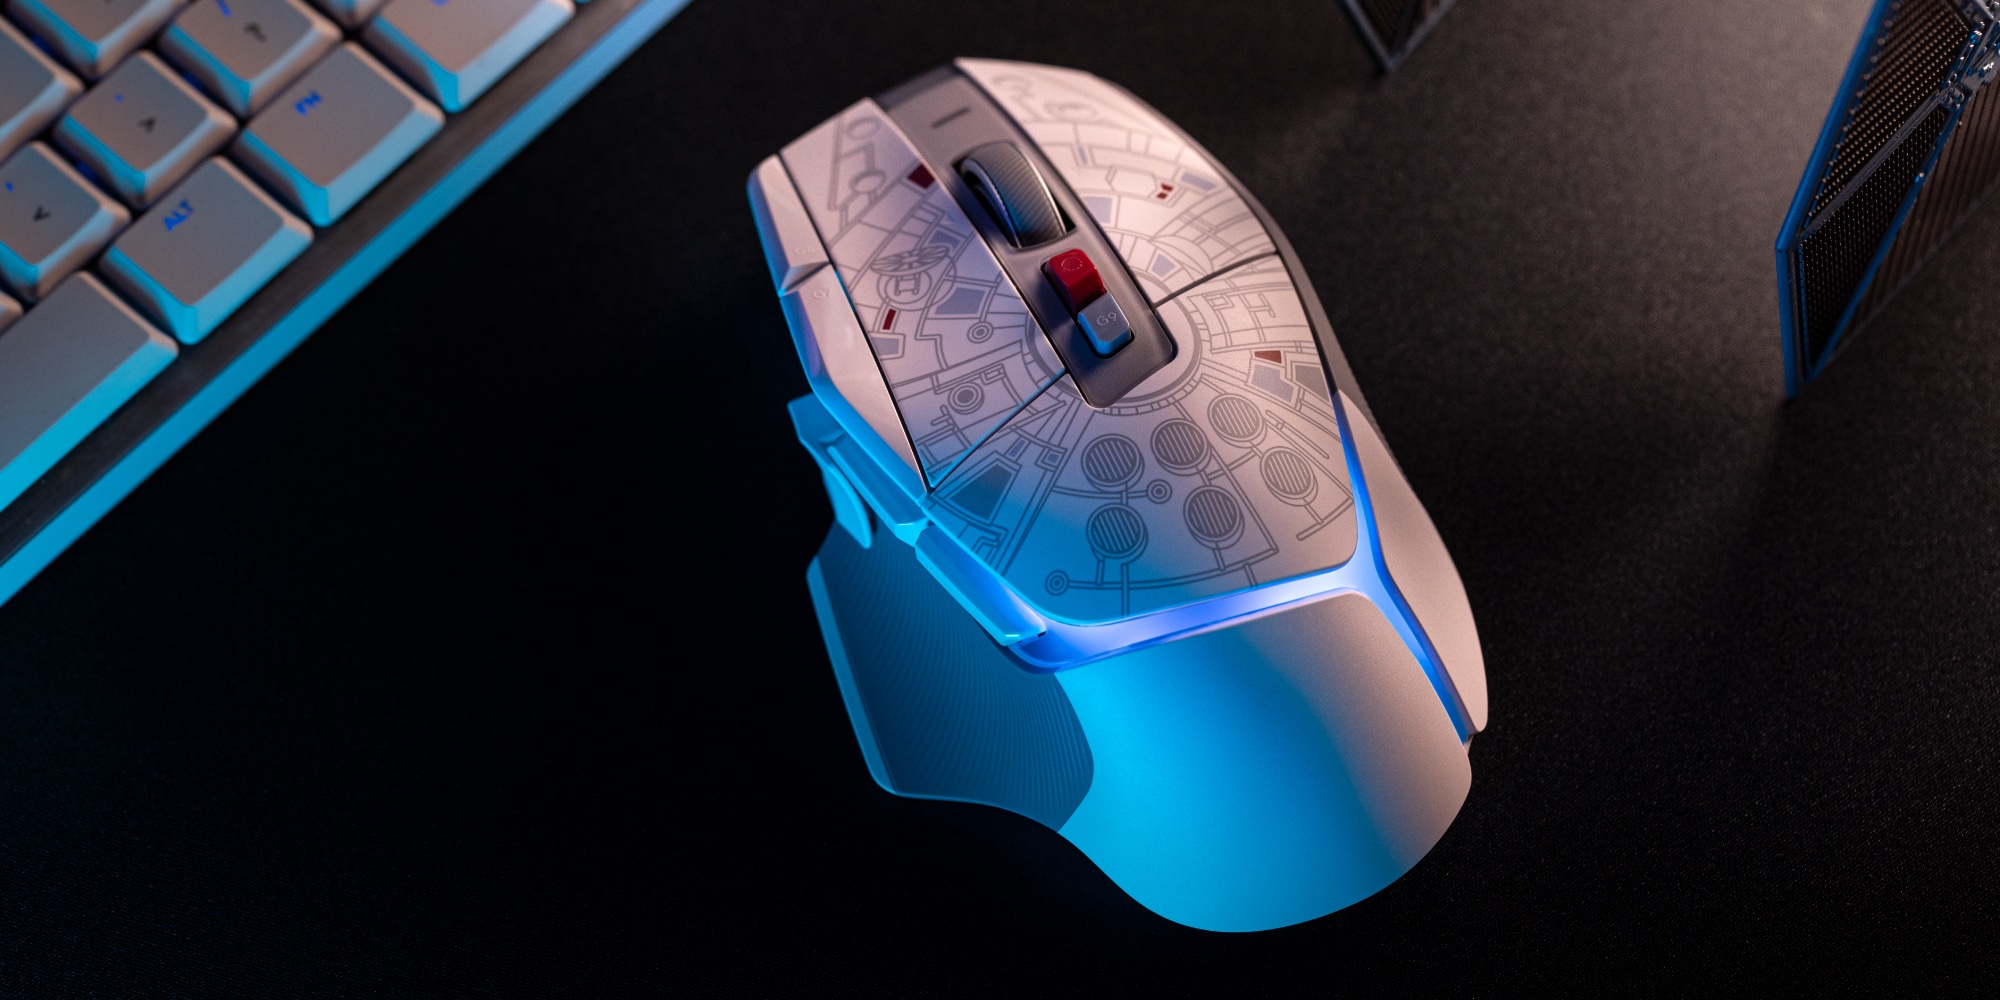 Logitech G502 X PLUS Millenium Falcon Mouse debuts